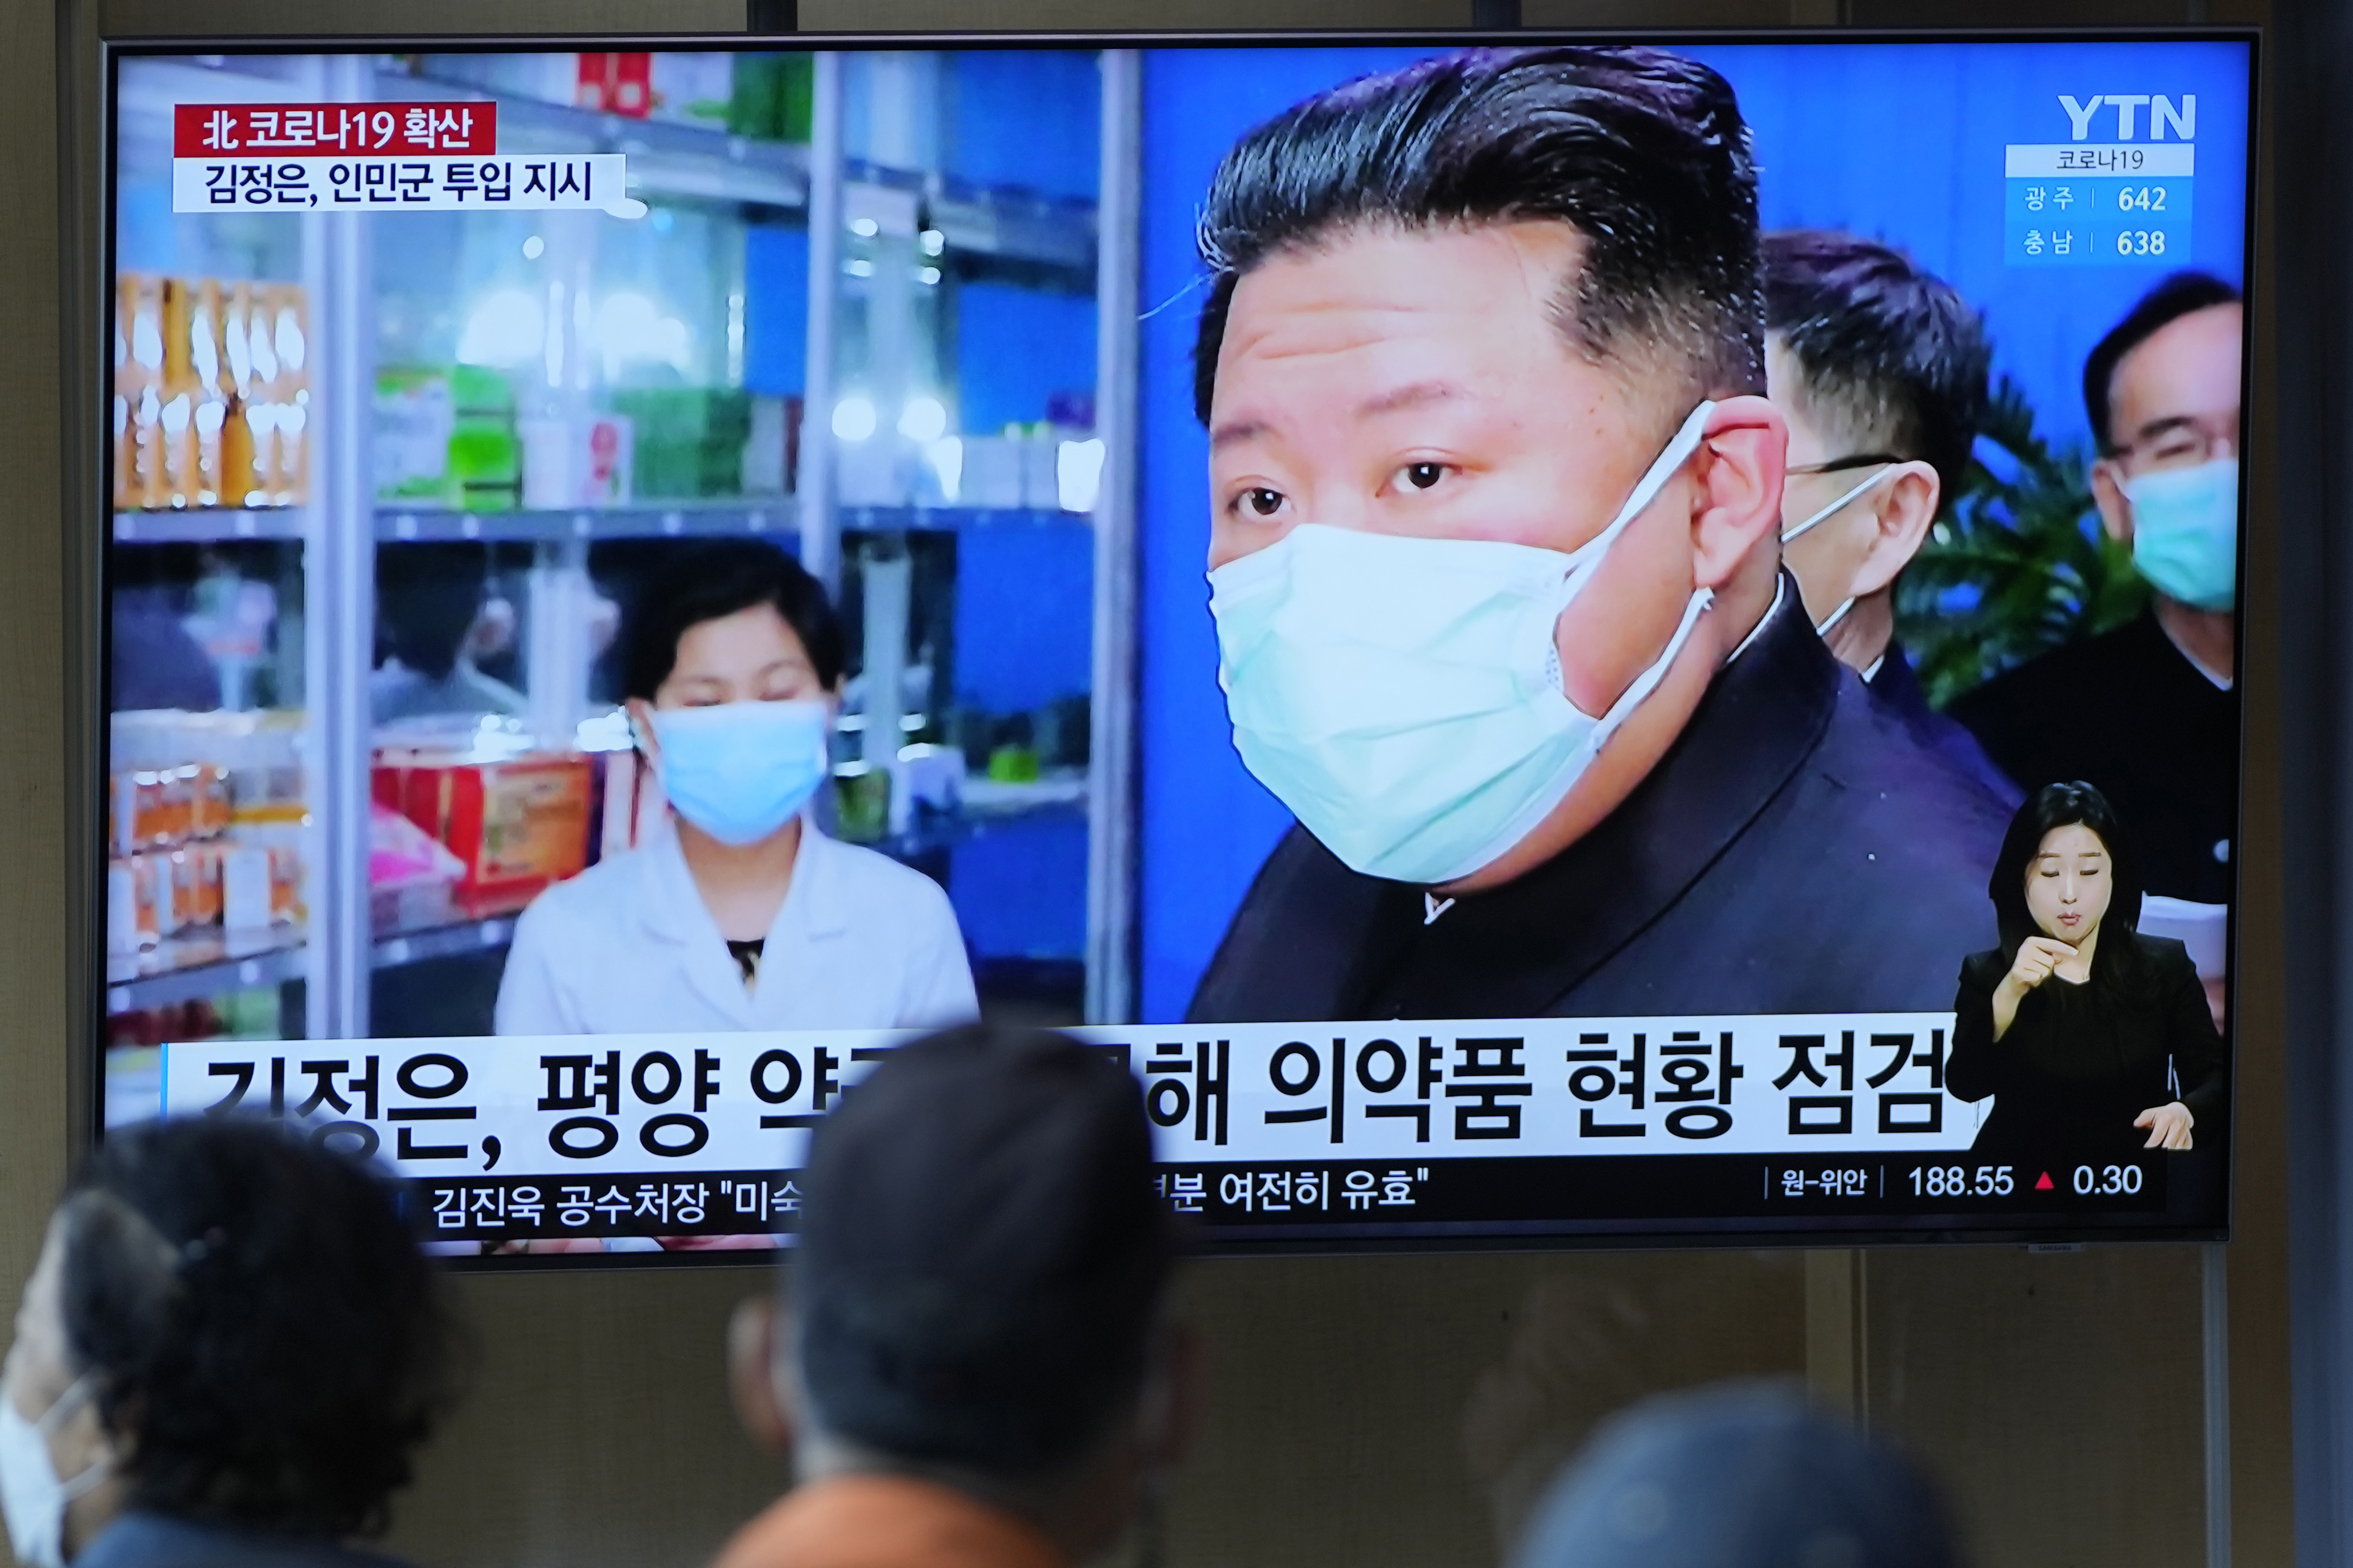 La gente mira una pantalla de televisión que muestra un programa de noticias con una imagen del líder norcoreano Kim Jong Un (Foto AP/Lee Jin-man)